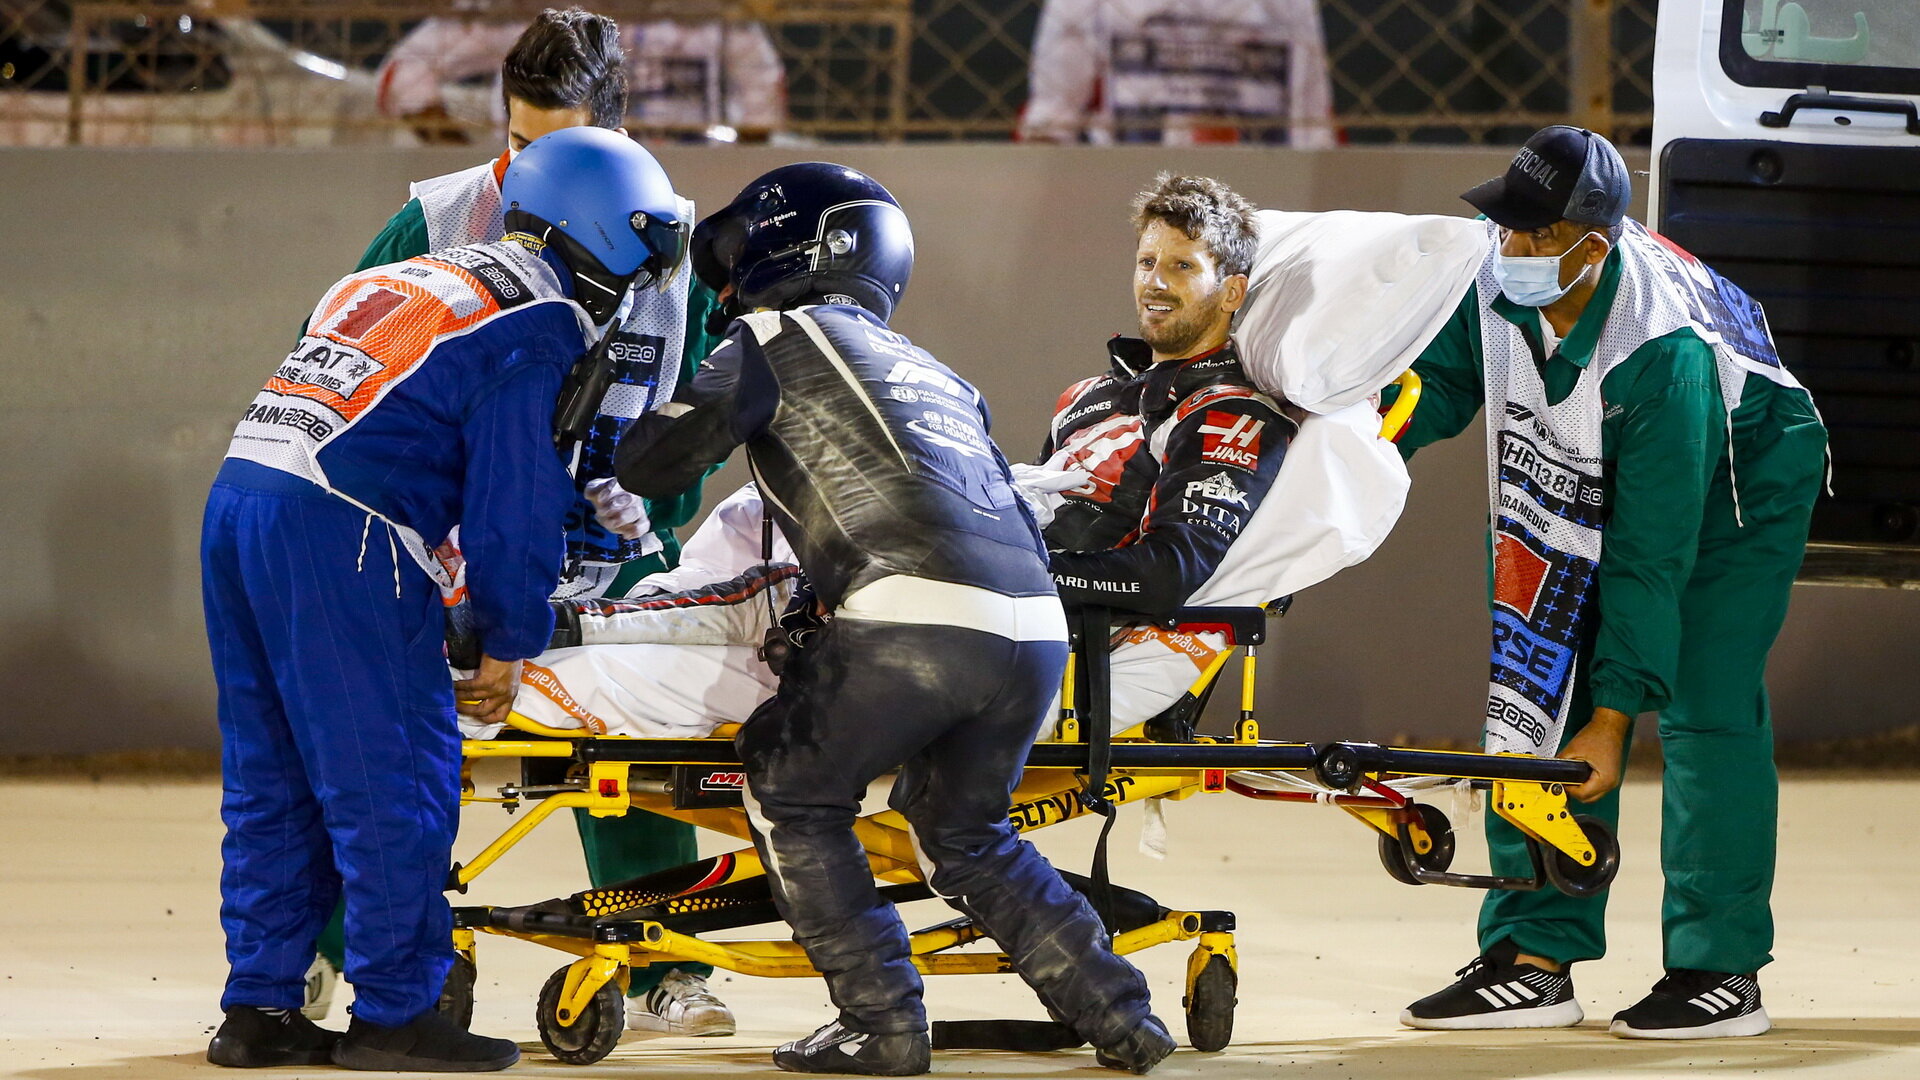 Romaina Grosjeana odvážejí po děsivé nehodě do nemocnice